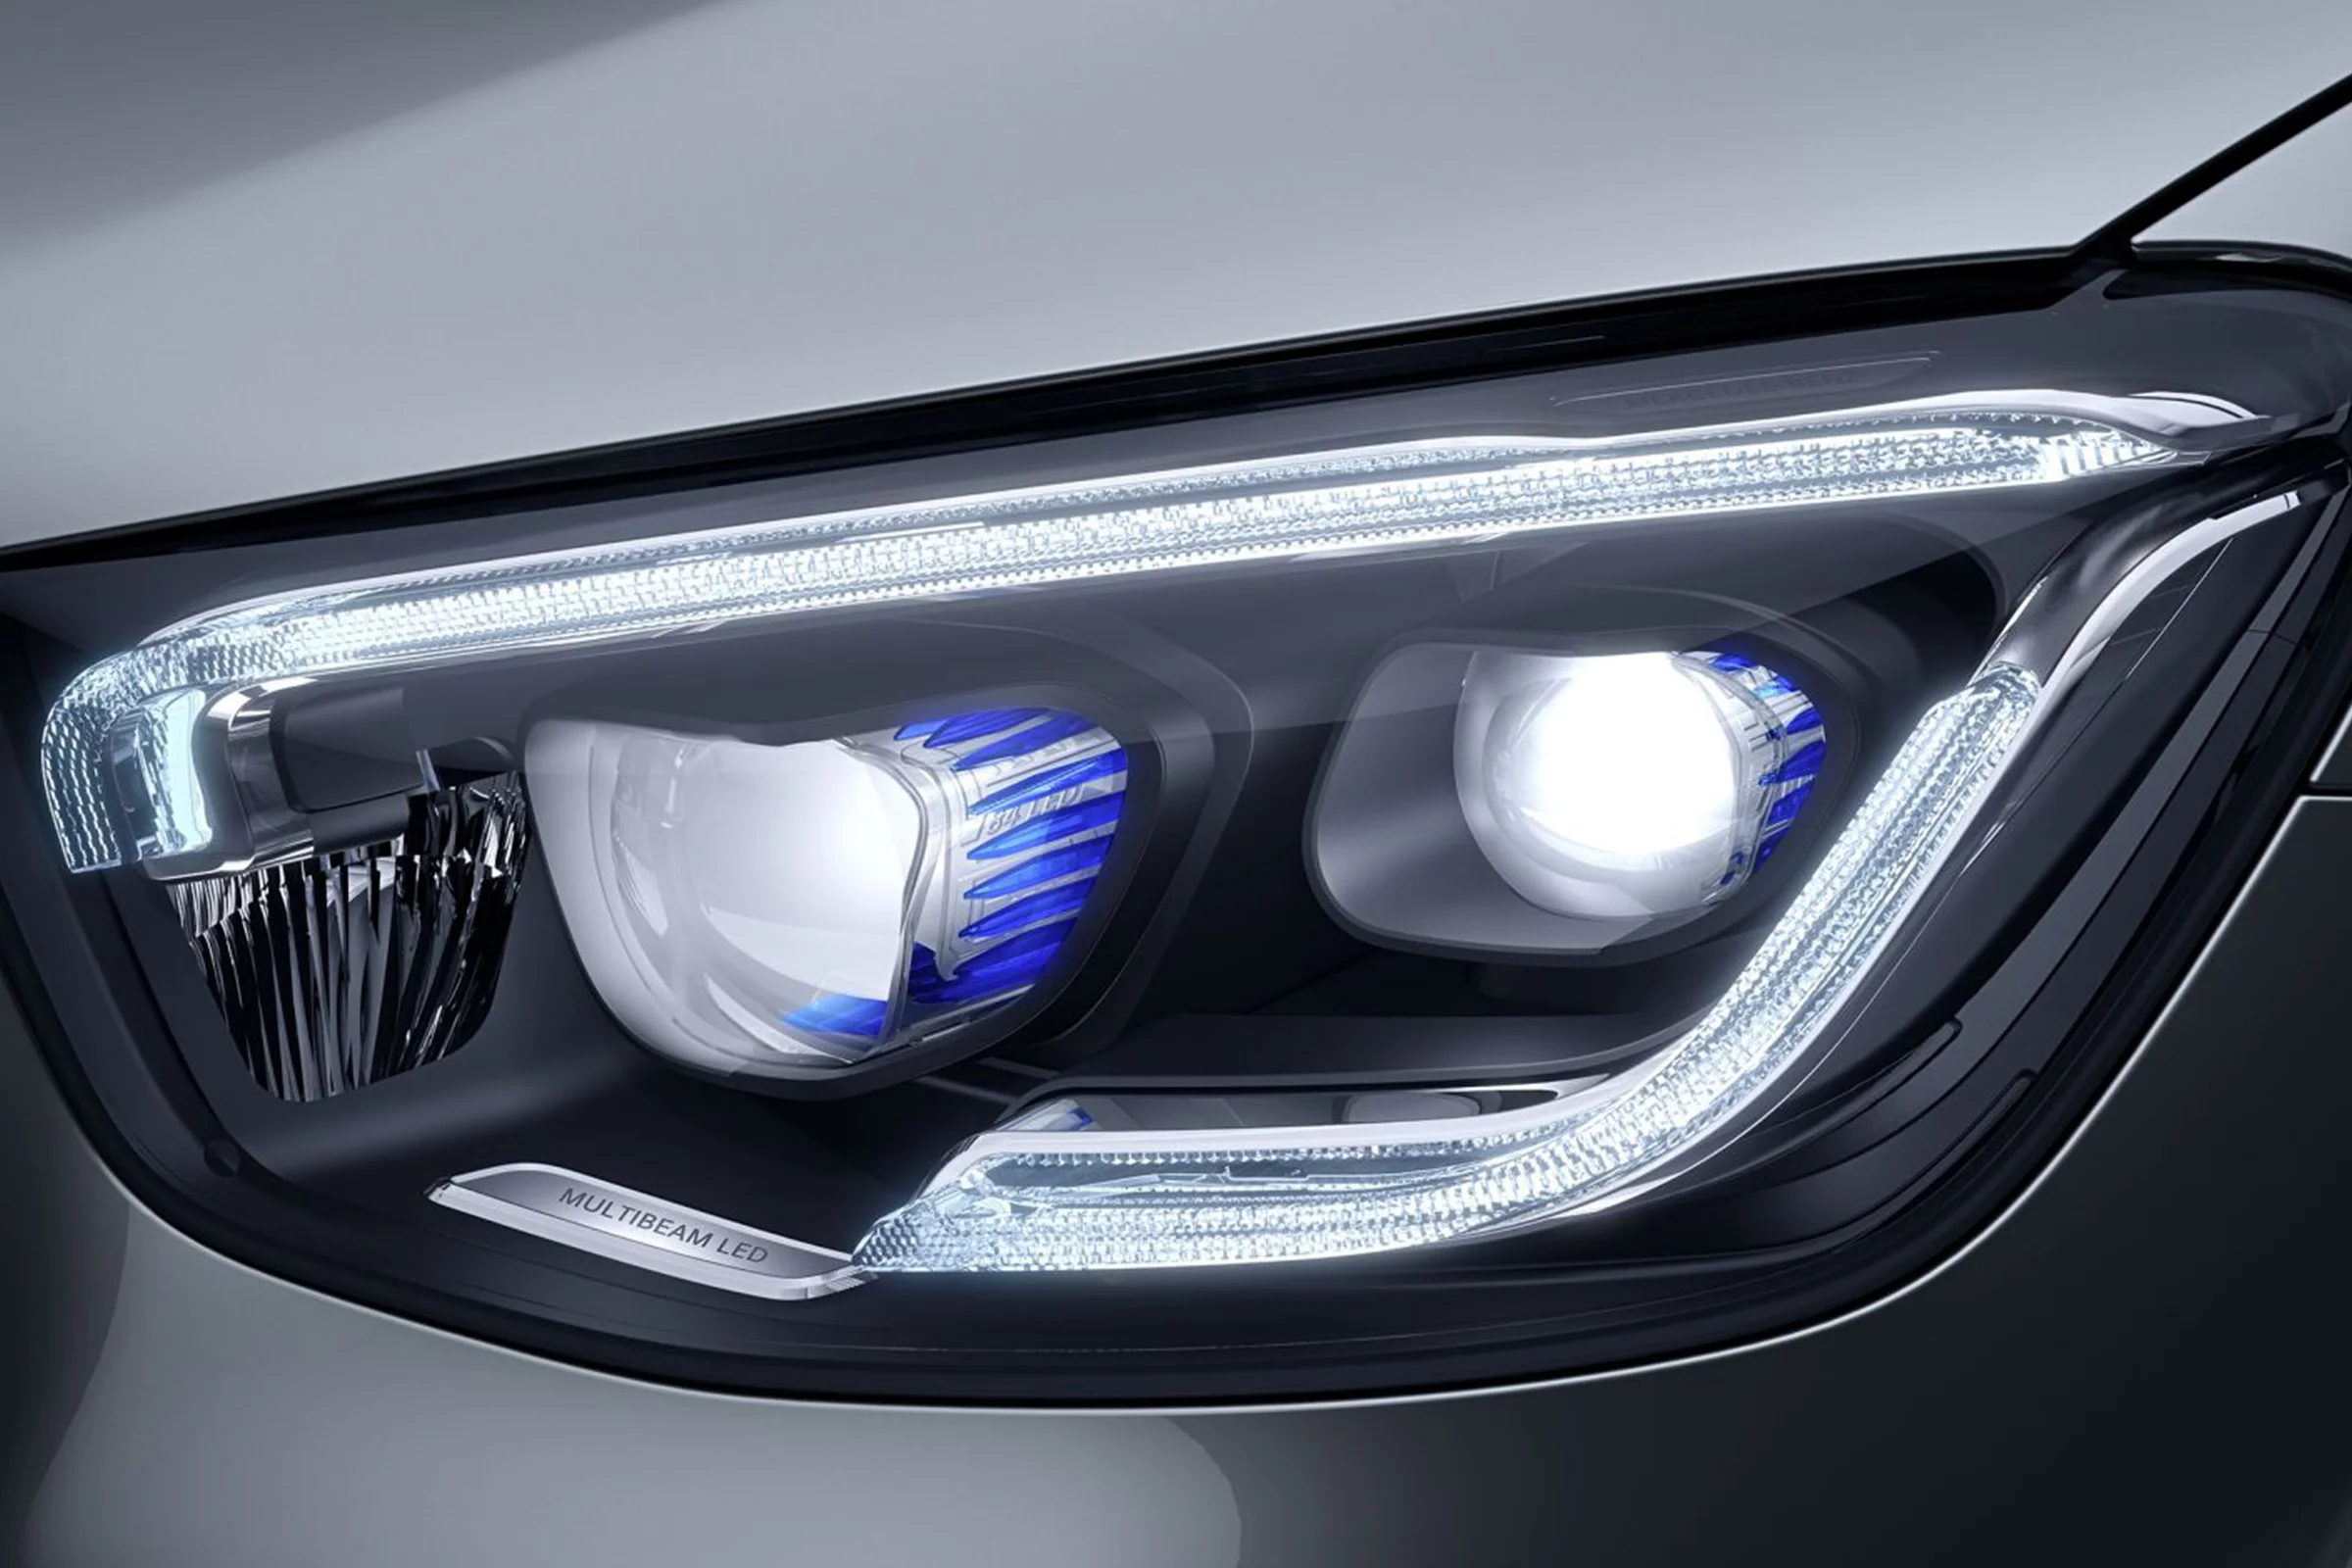 amerikansk dollar kiwi kedel Multibeam LED Mercedes Benz forlygter med optimal lysstyrke